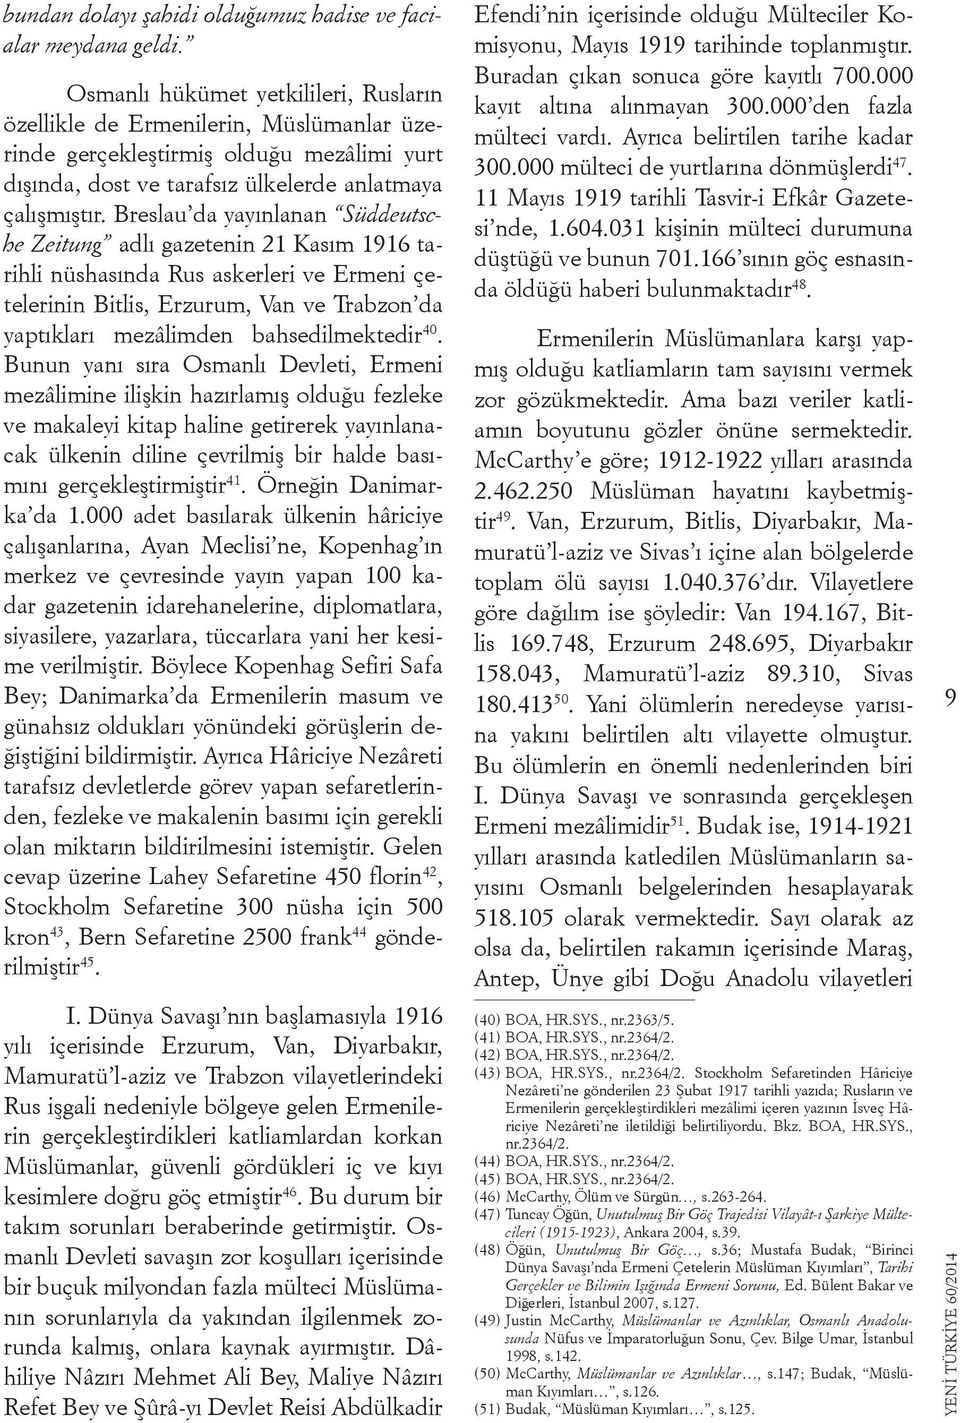 Breslau da yayınlanan Süddeutsche Zeitung adlı gazetenin 21 Kasım 1916 tarihli nüshasında Rus askerleri ve Ermeni çetelerinin Bitlis, Erzurum, Van ve Trabzon da yaptıkları mezâlimden bahsedilmektedir